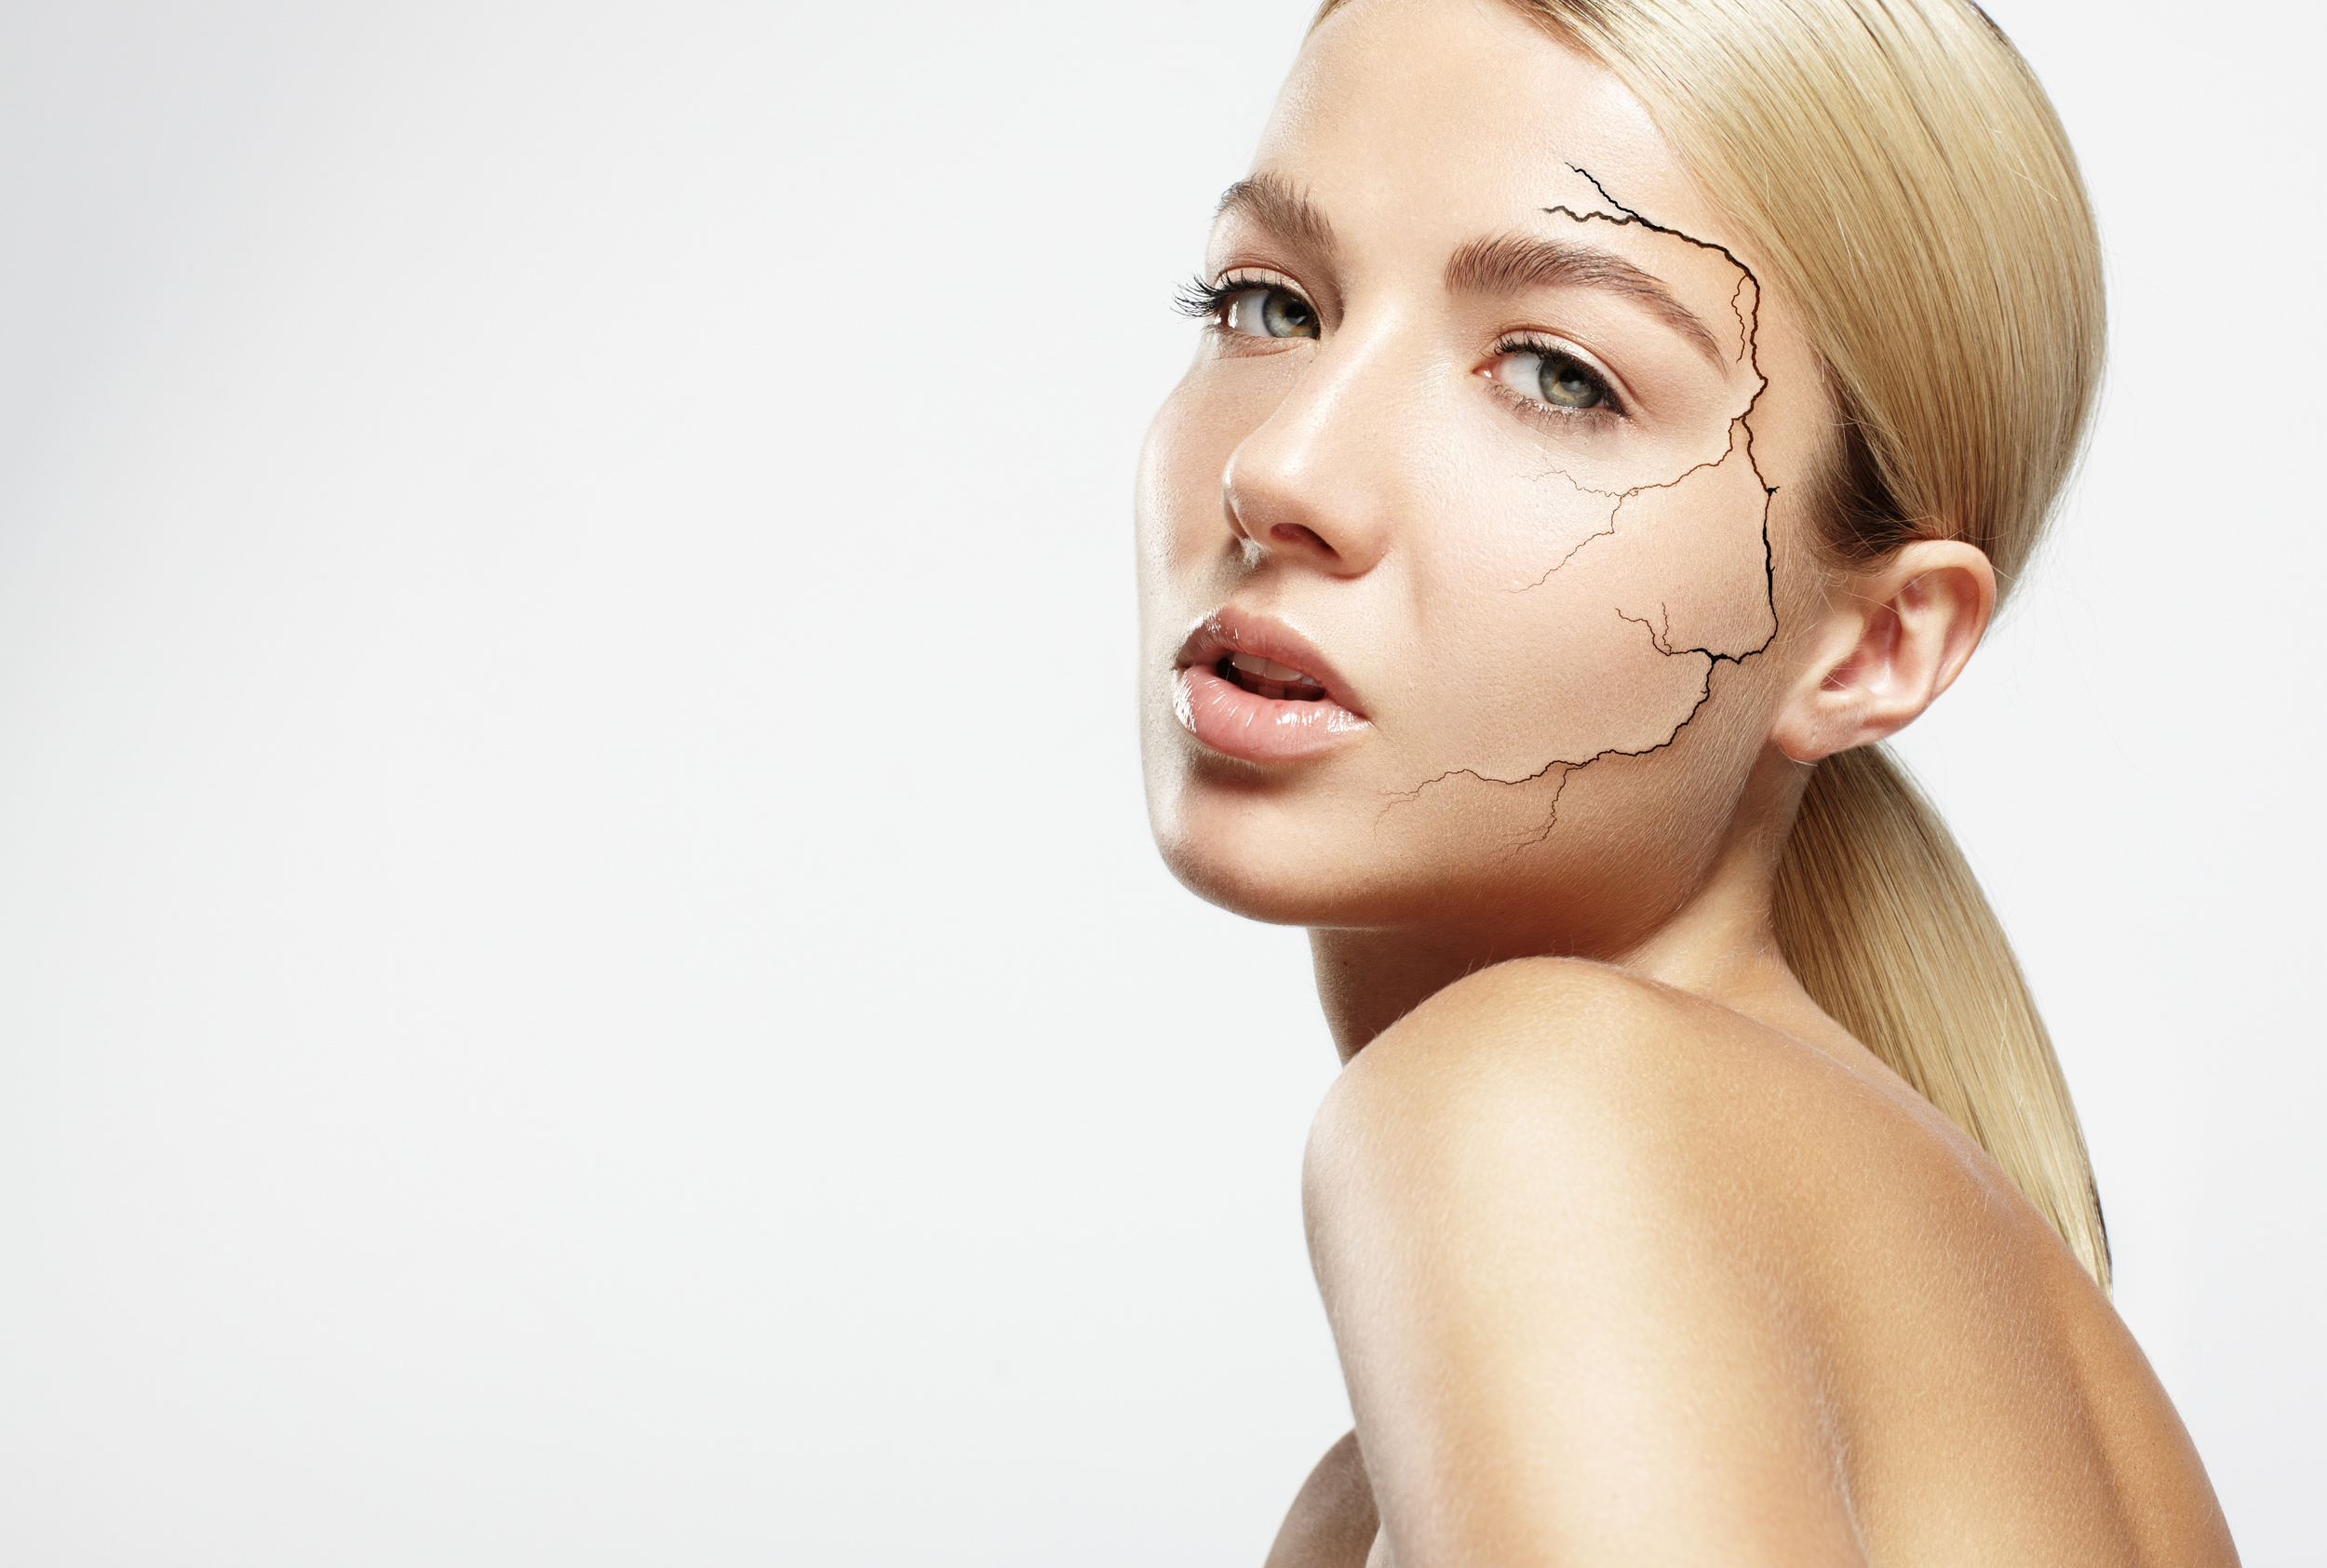 5 thành phần chăm sóc da nên tránh đối với các cô nàng da khô